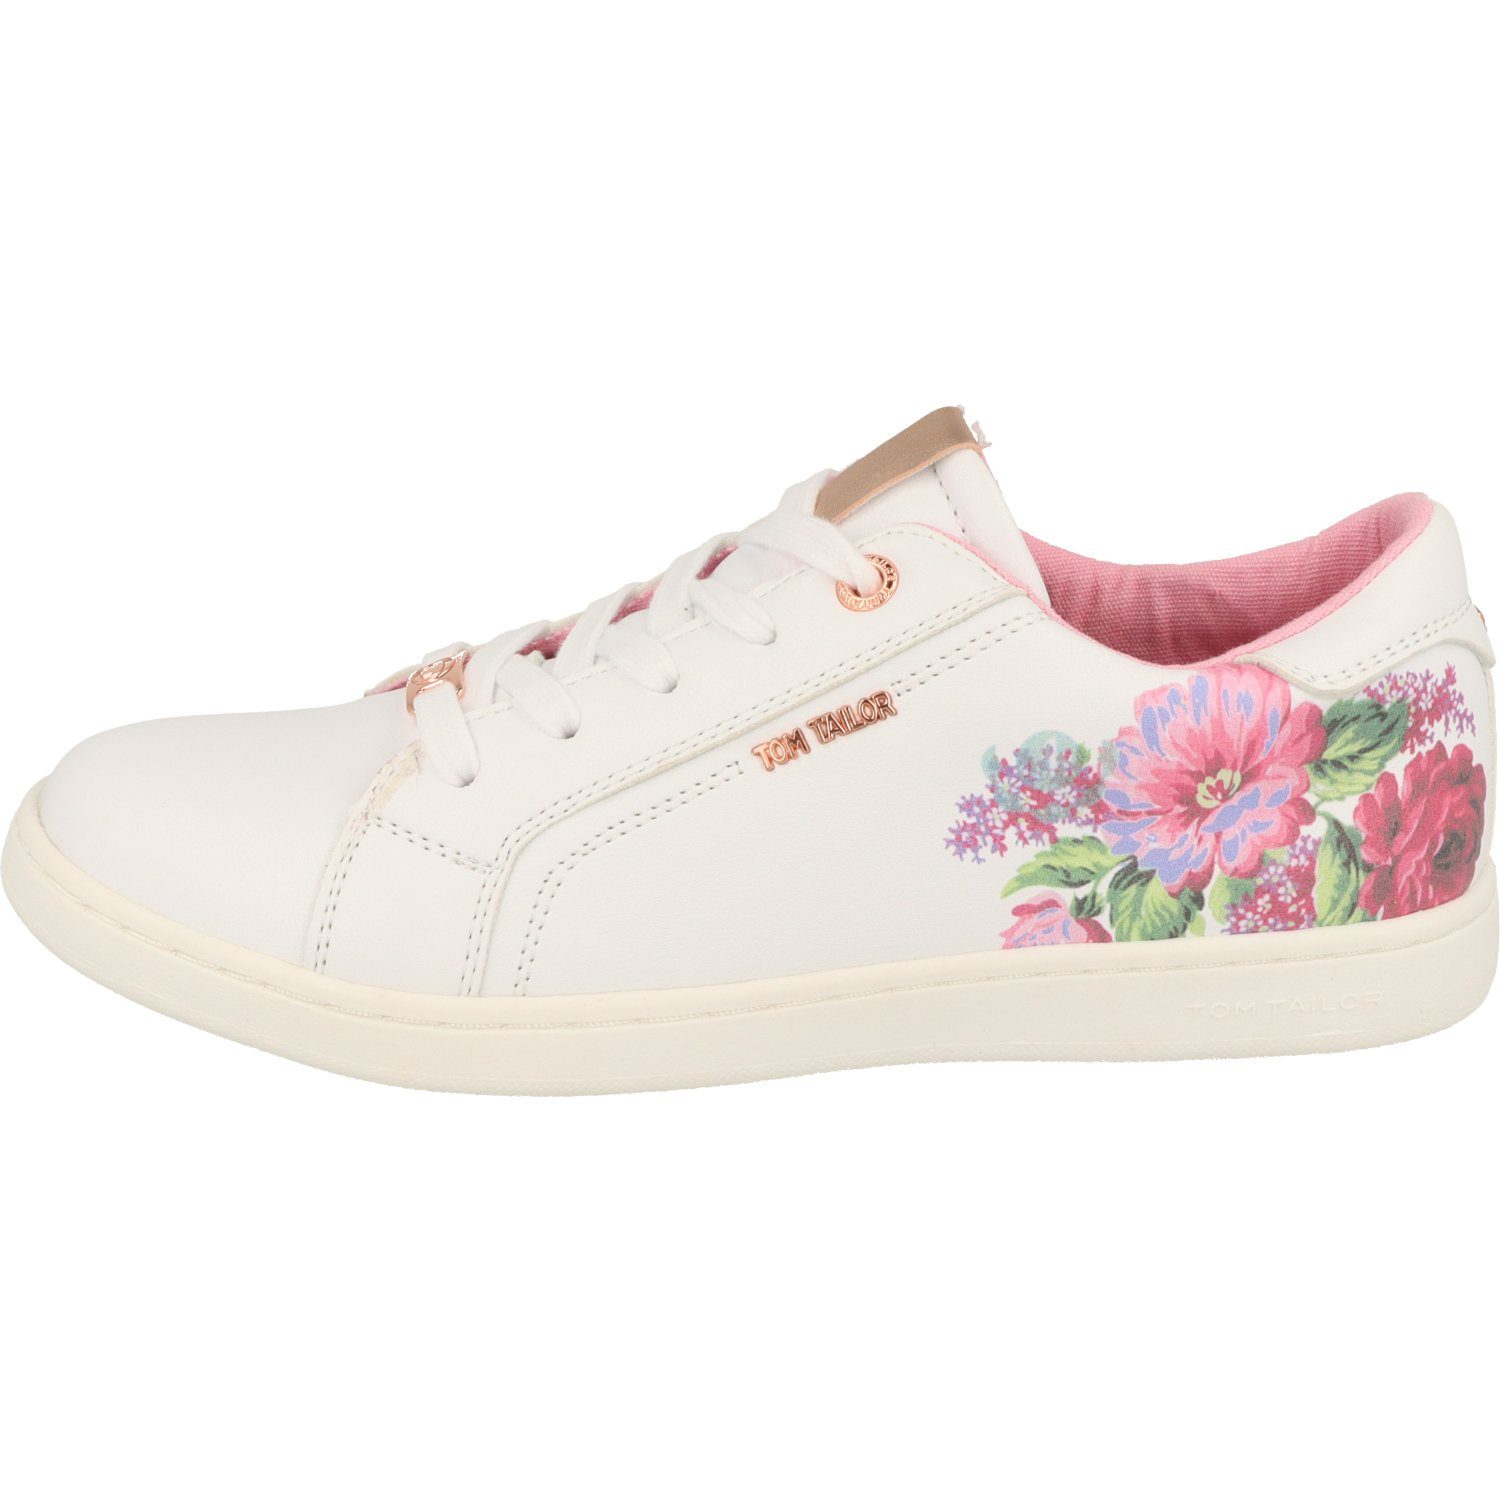 TOM TAILOR Mädchen Schuhe White Flower Schnürschuh Sneaker 5372704 Halbschuhe